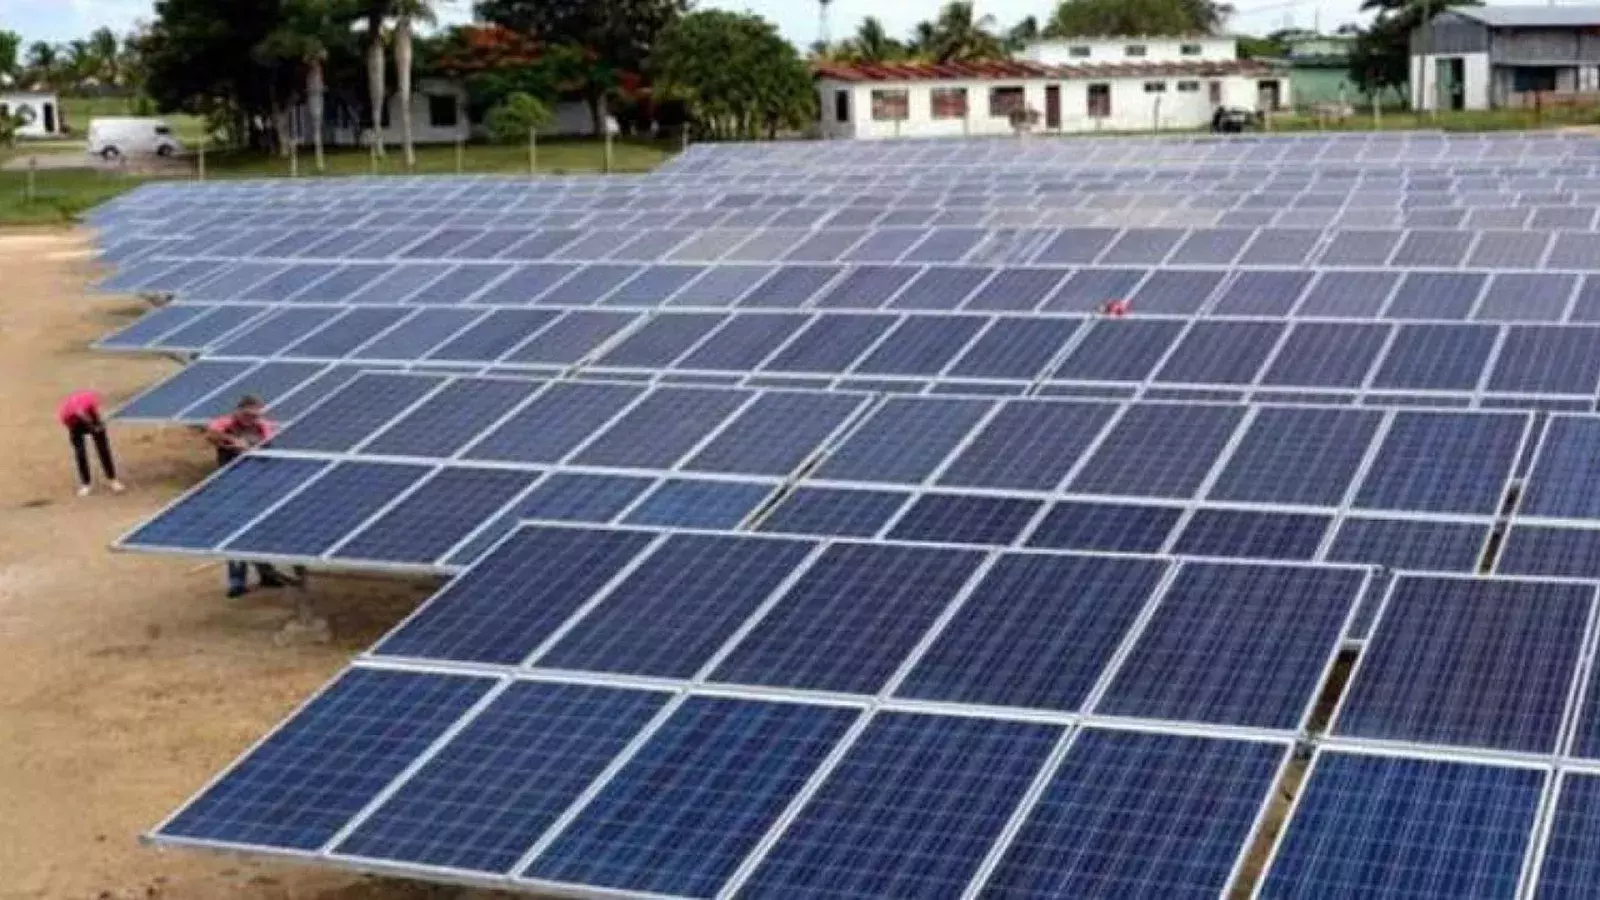 Empresas extranjeras podrán invertir en energías renovables en Cuba